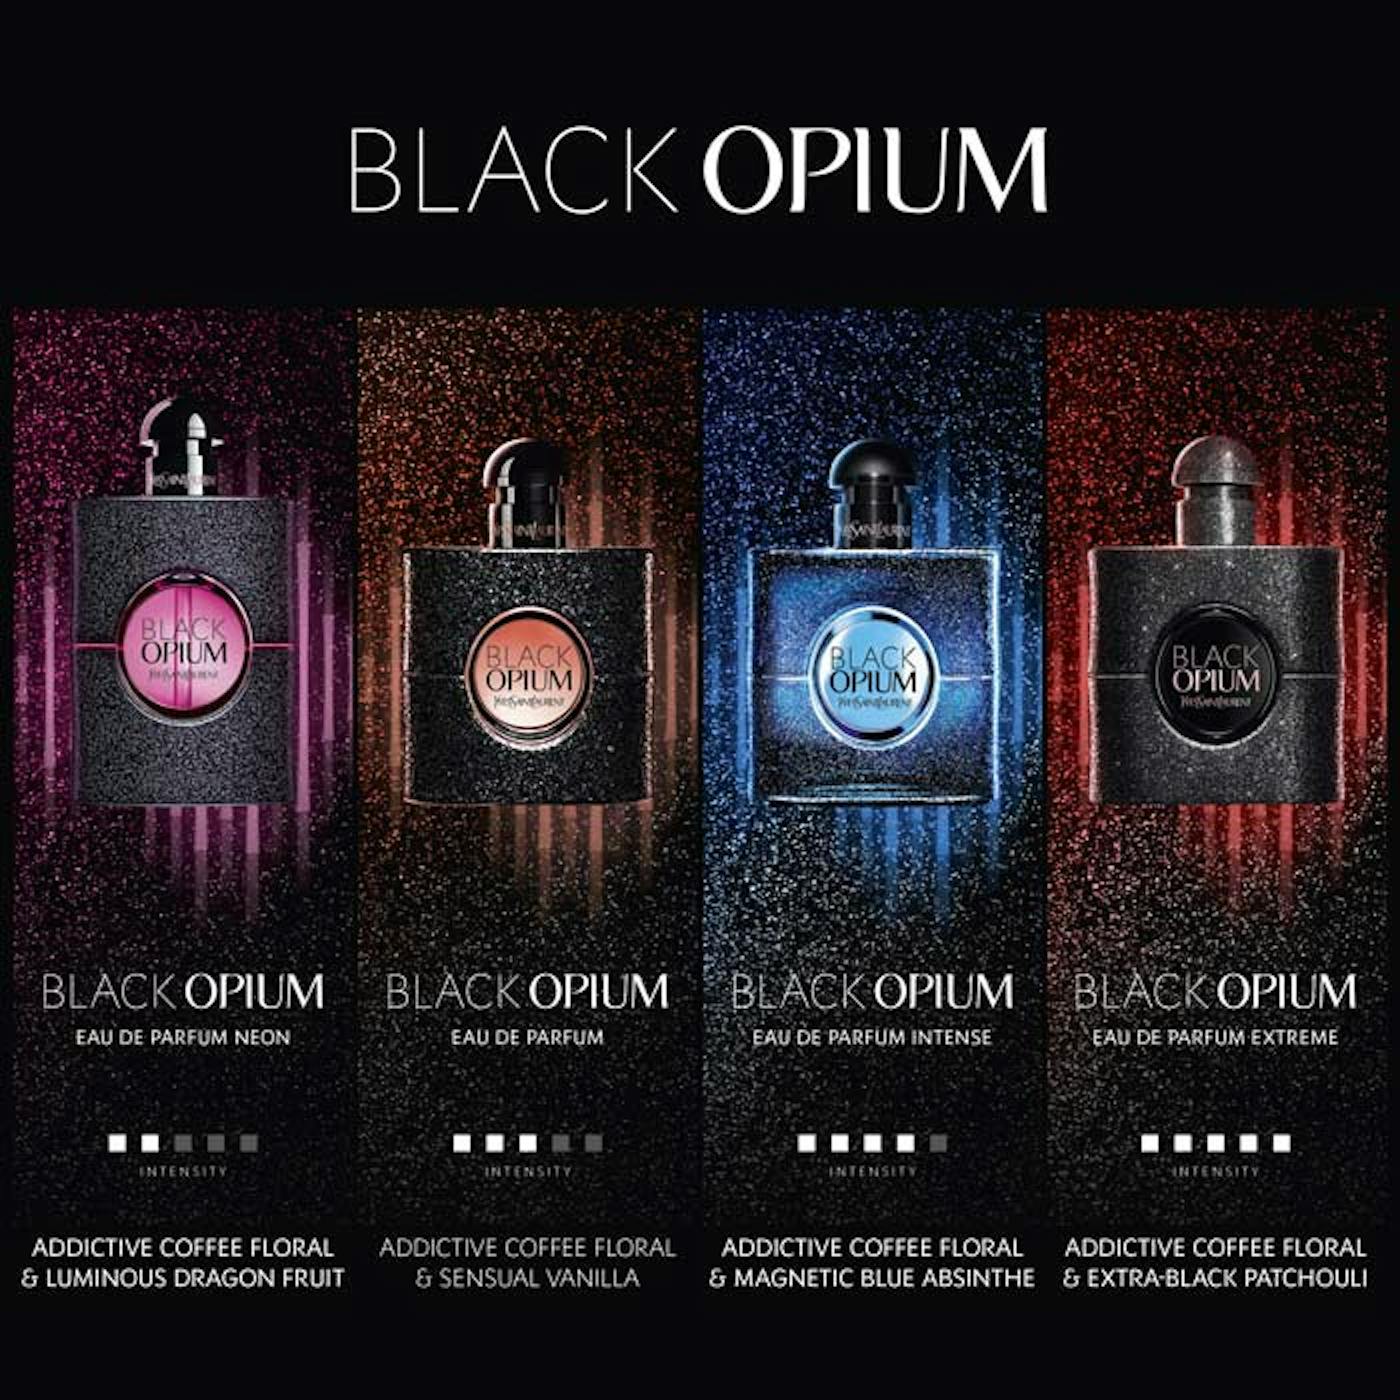 Yves Saint Laurent Black Opium Extreme Eau de Parfum - 3.0 oz